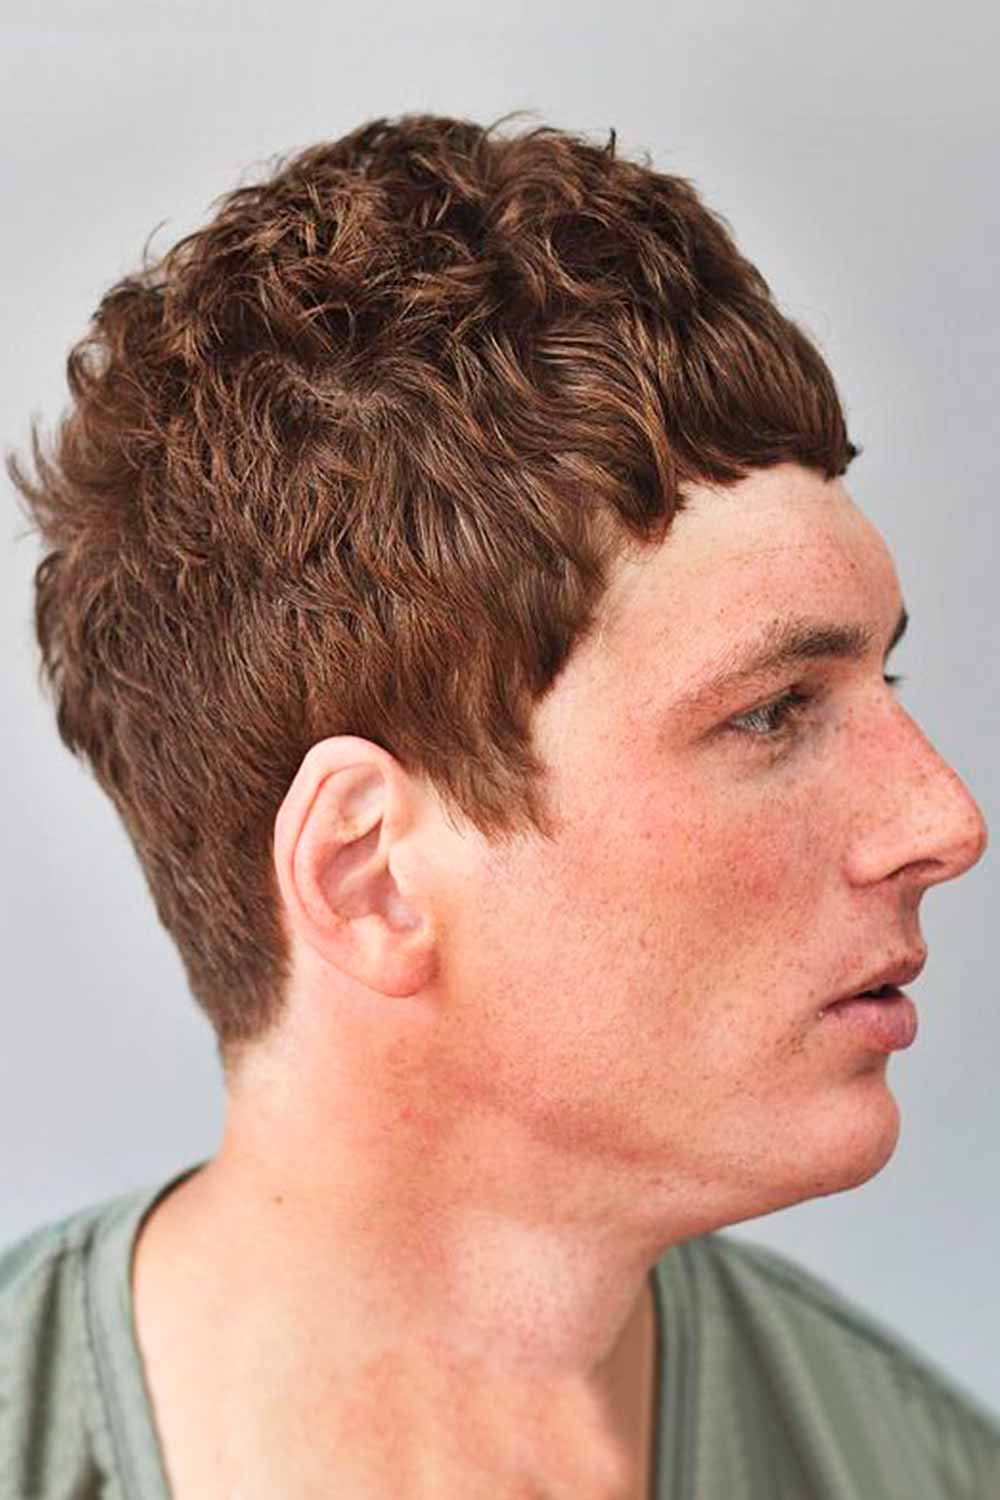 Textured Caesar Haircut #typesofhaircuts #typesofhaircutsformen #typesofmenshaircuts #haircutnames